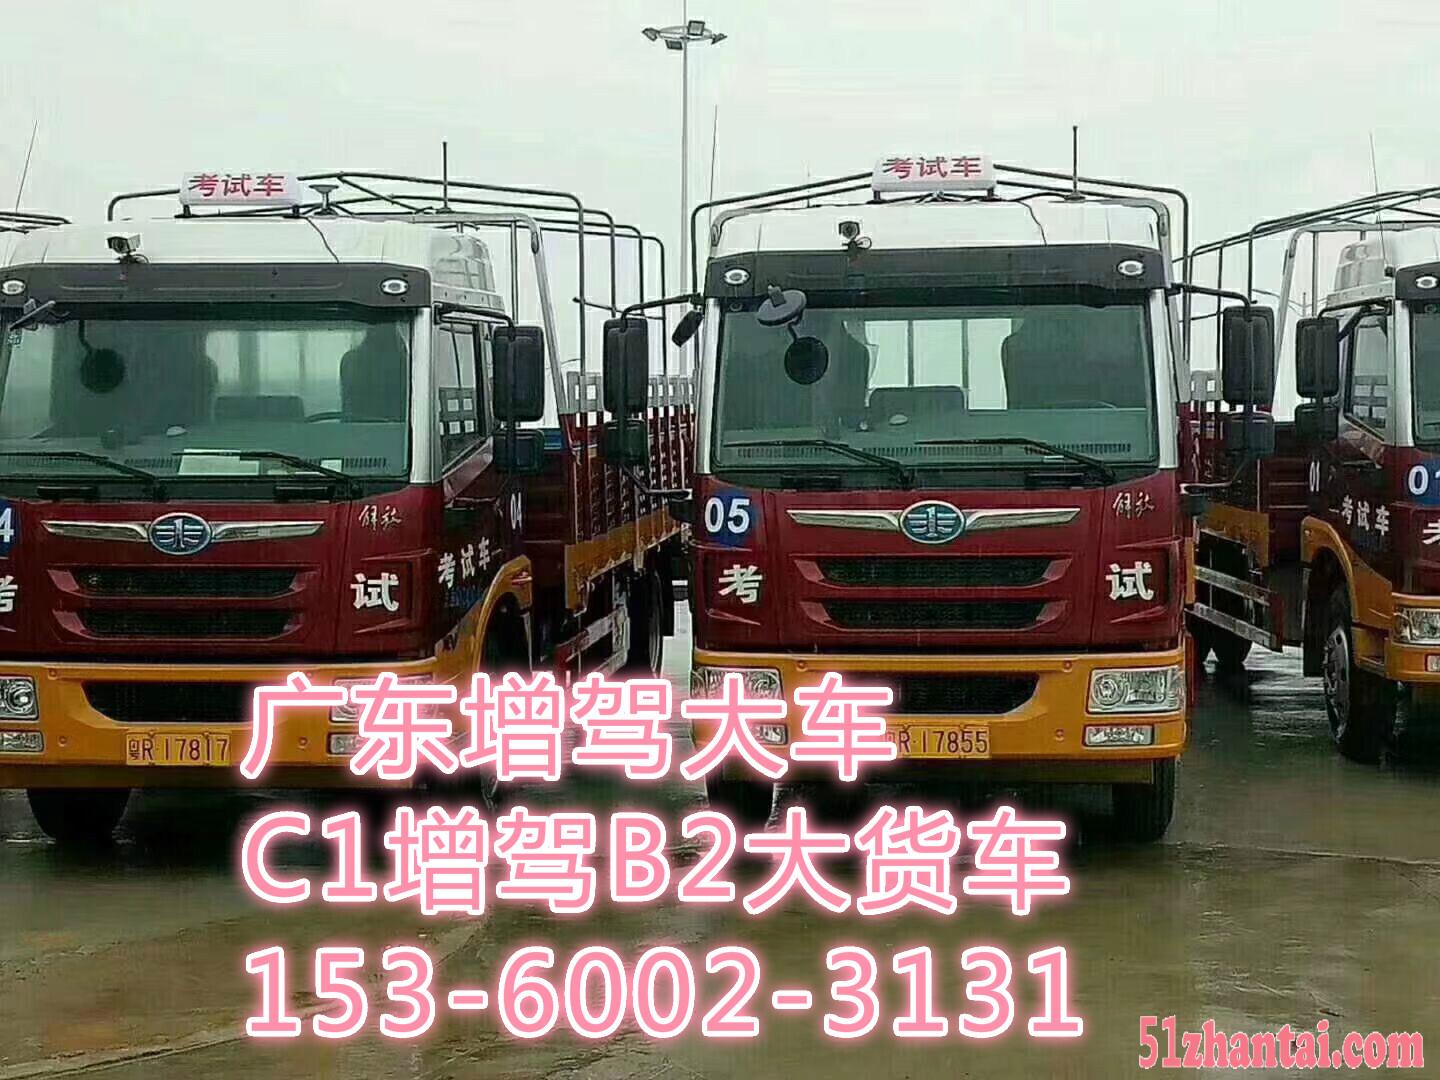 广州B2增驾 萝岗考B2 小车升货车学费 C1增B2条件-图3